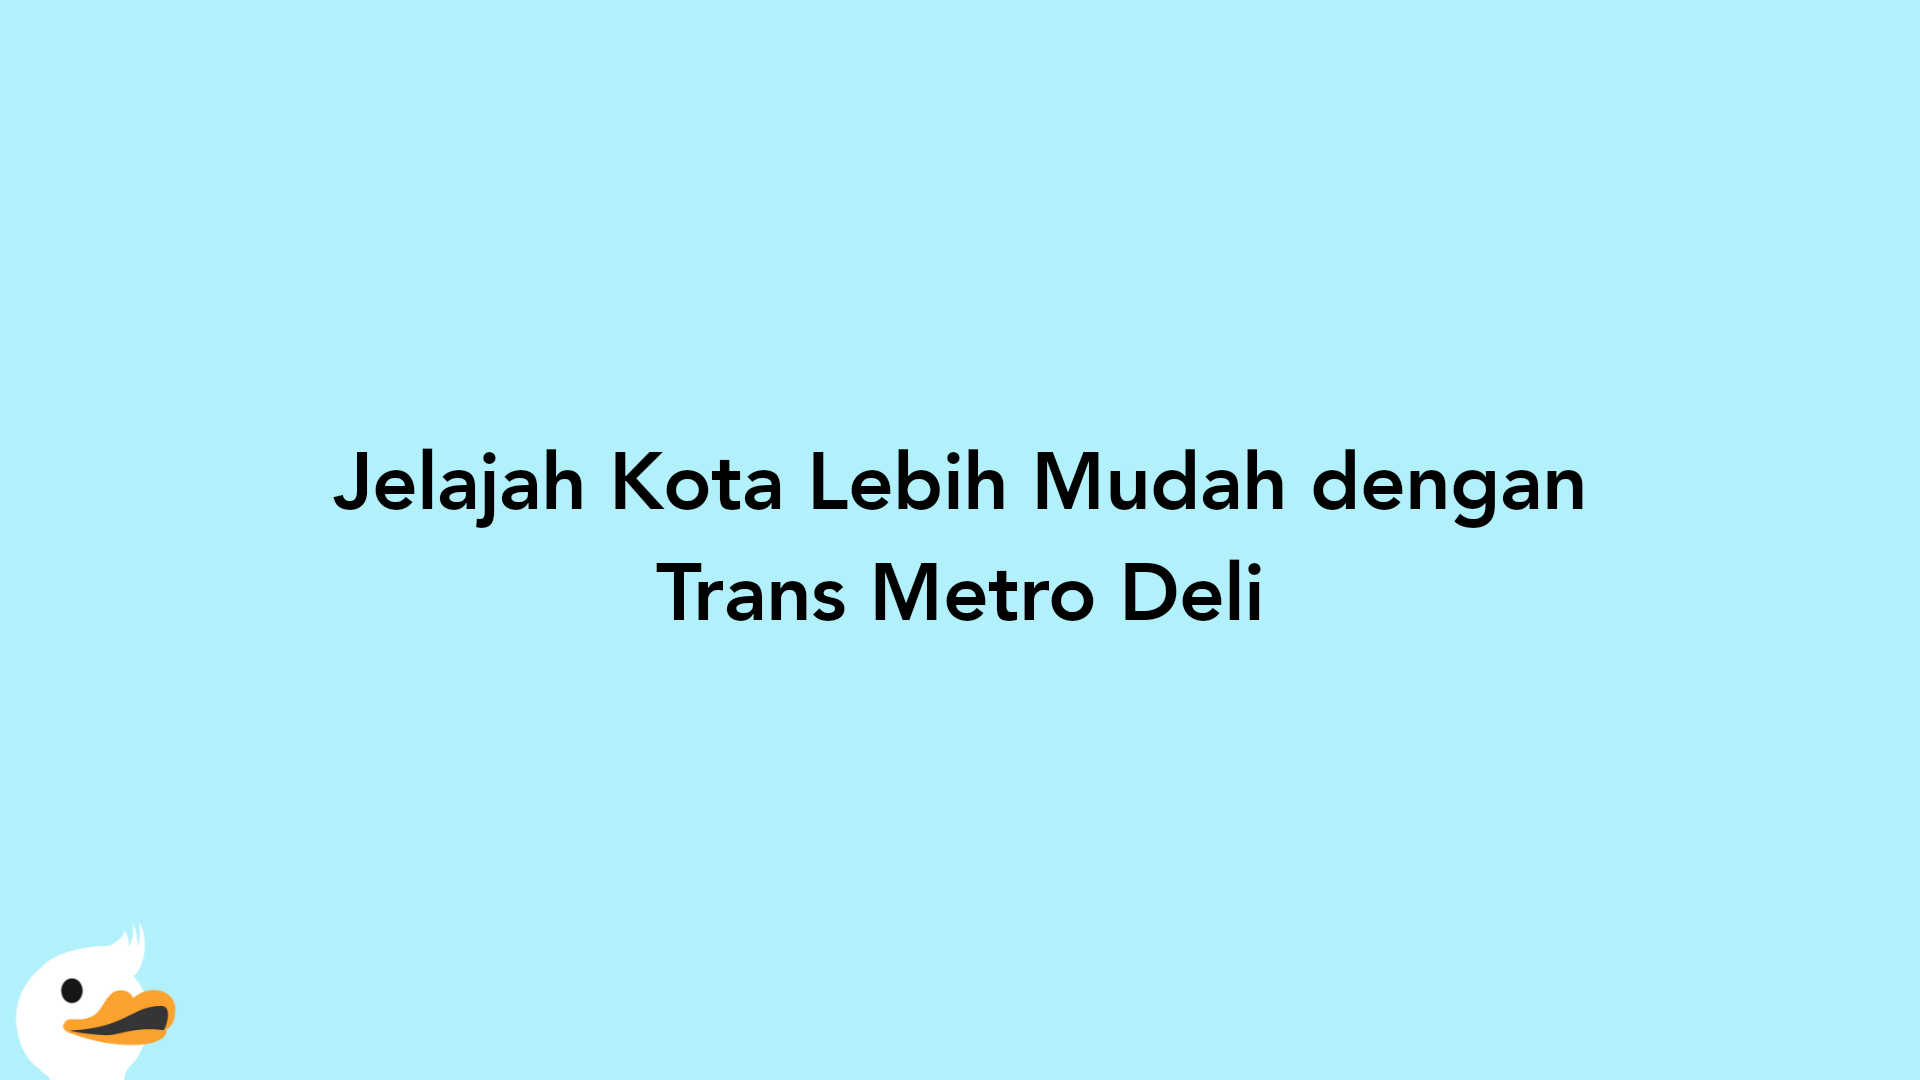 Jelajah Kota Lebih Mudah dengan Trans Metro Deli